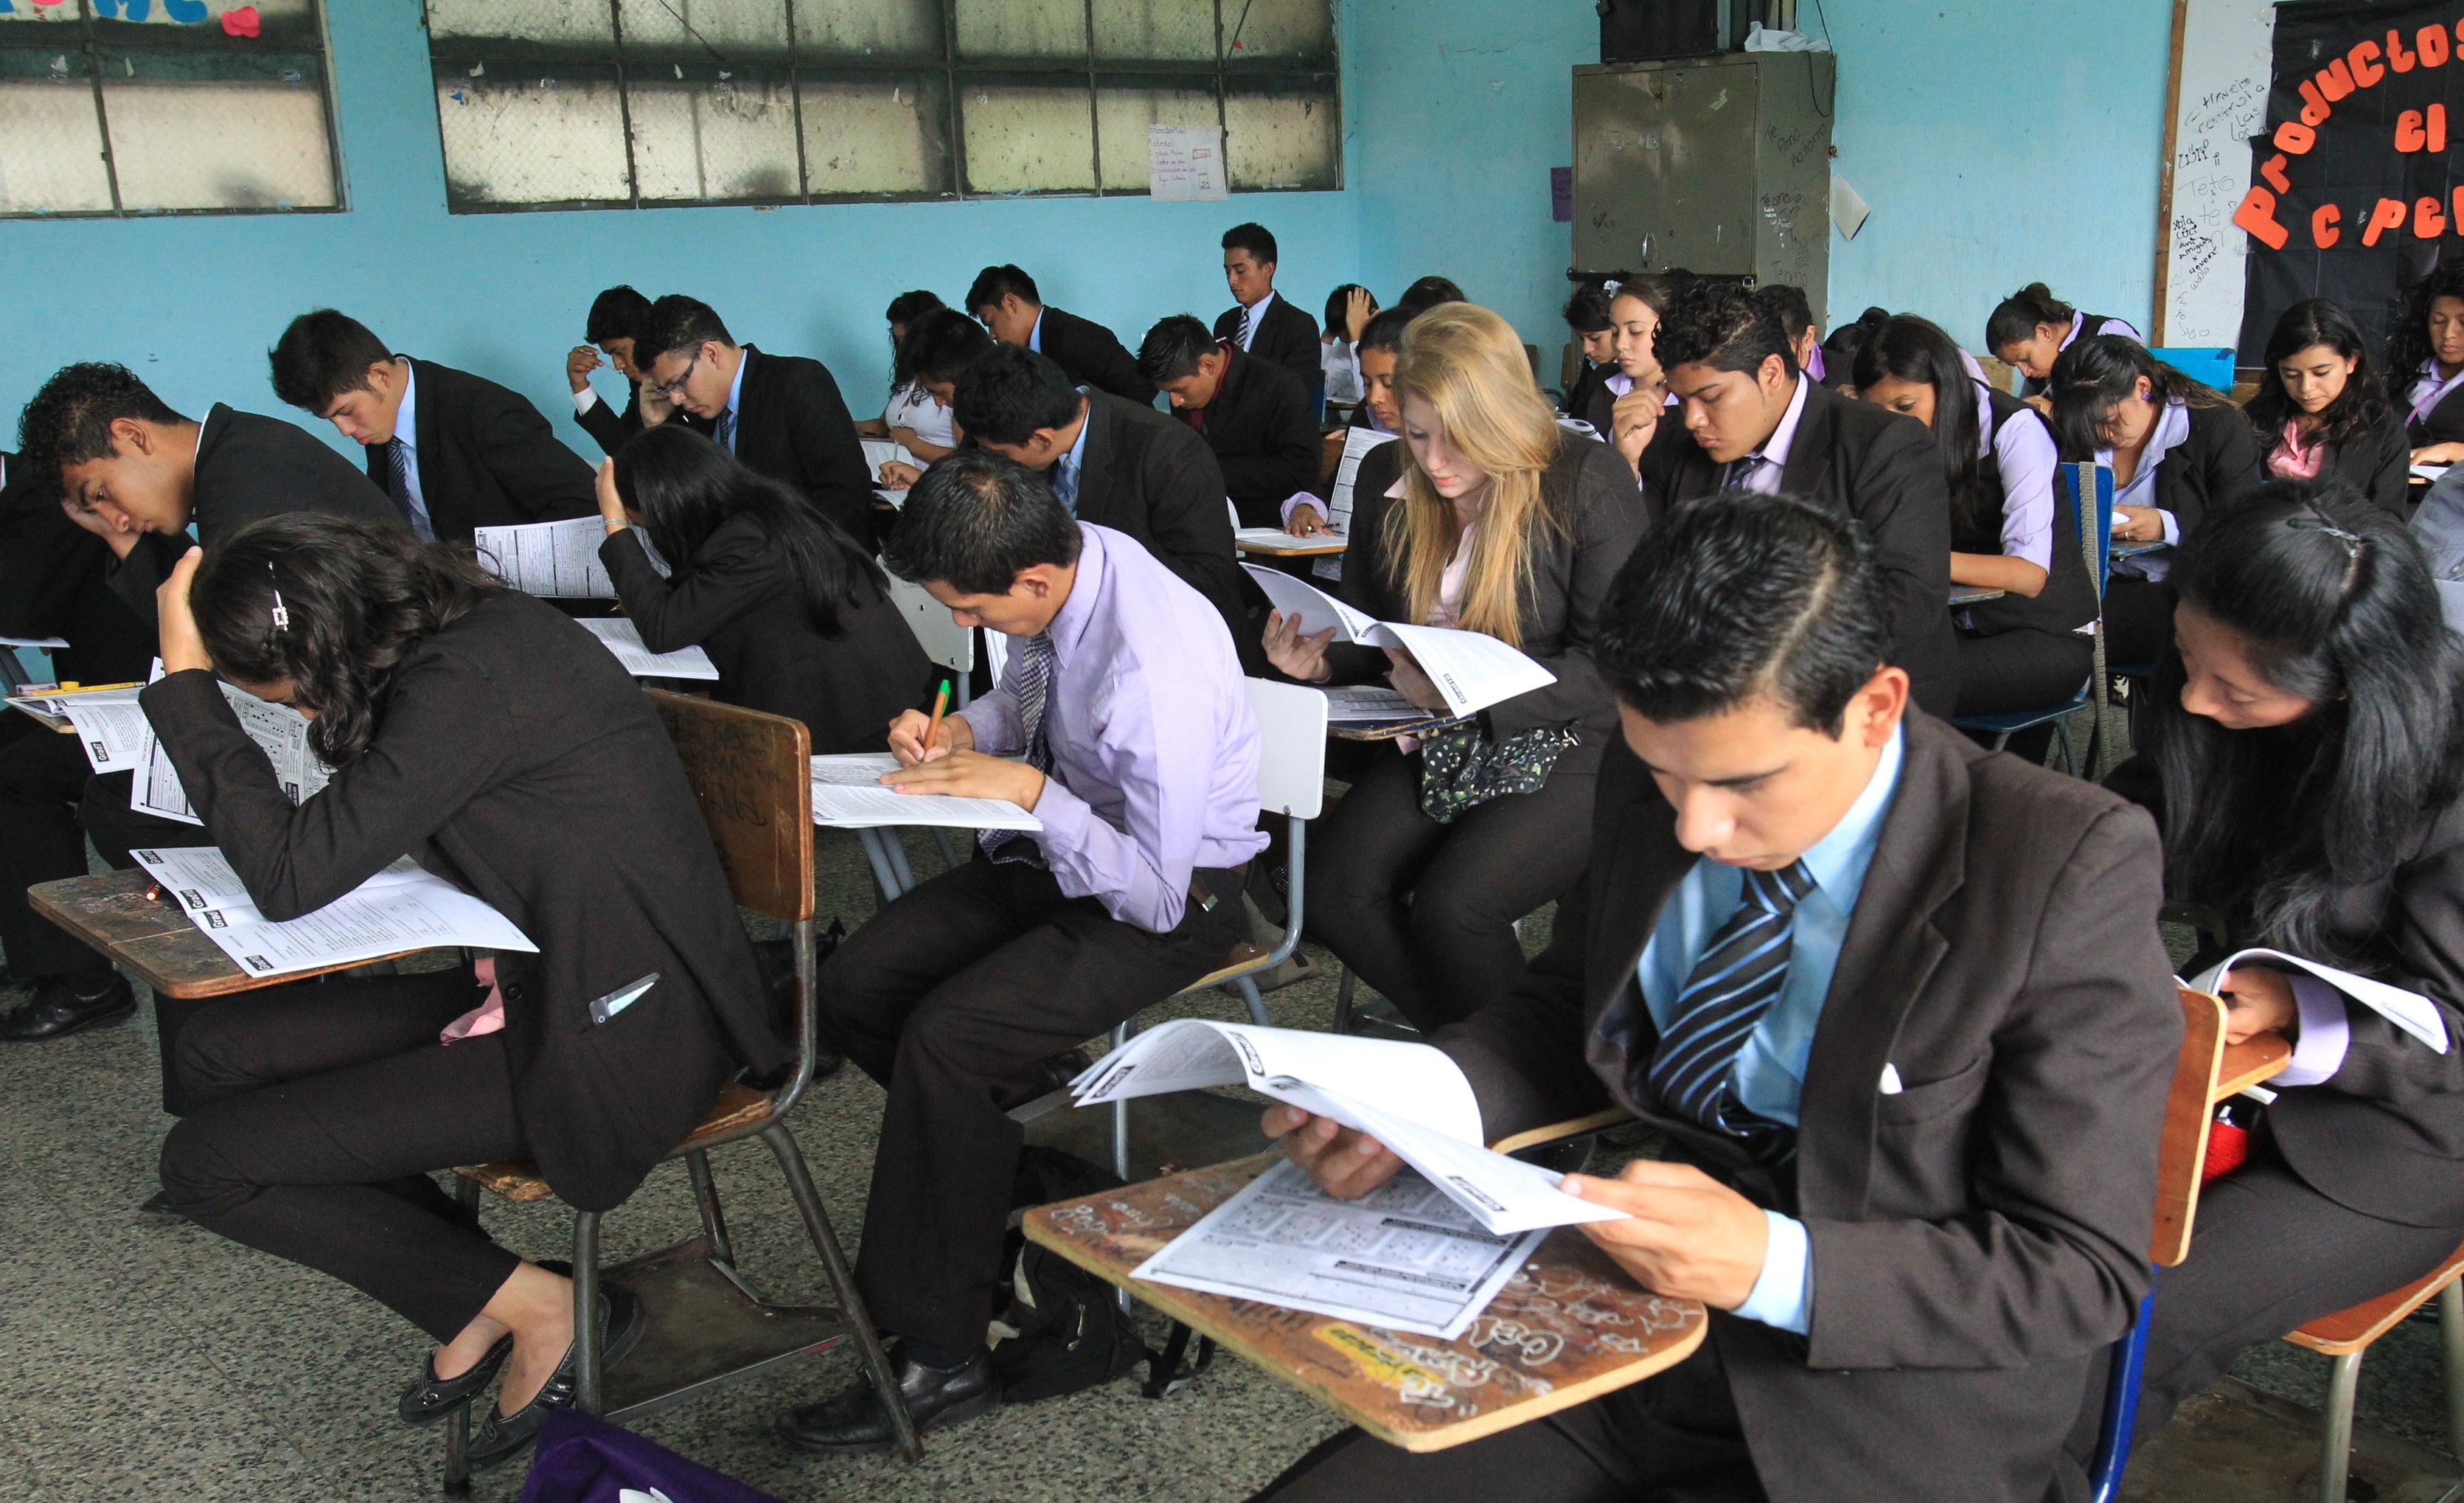 Pruebas a los graduandos de Guatemala.  (Foto Prensa Libre: Hemeroteca PL)